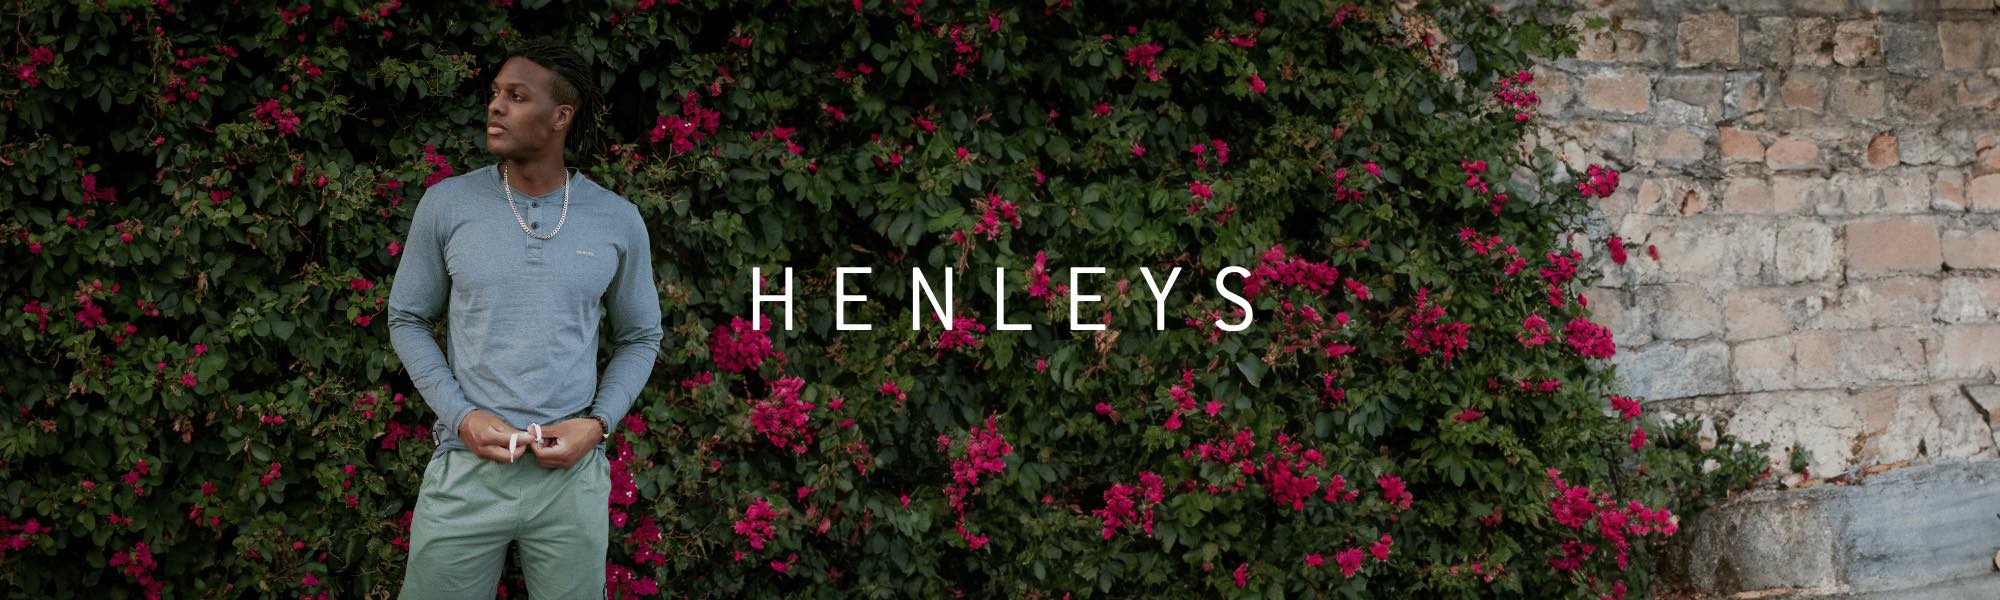 Henleys